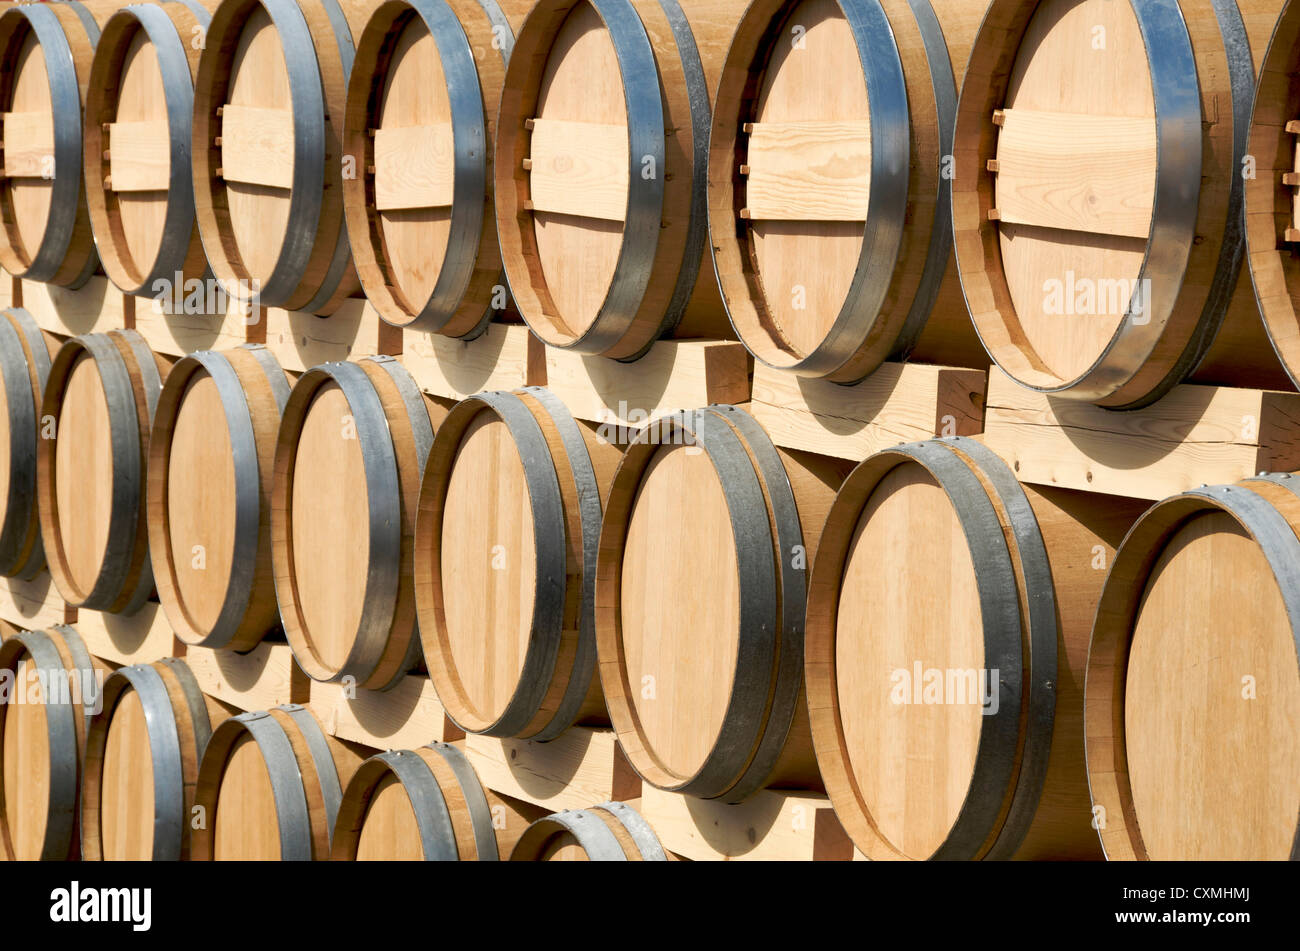 Barriles de vino de Madera, Burdeos gironda, Francia Foto de stock